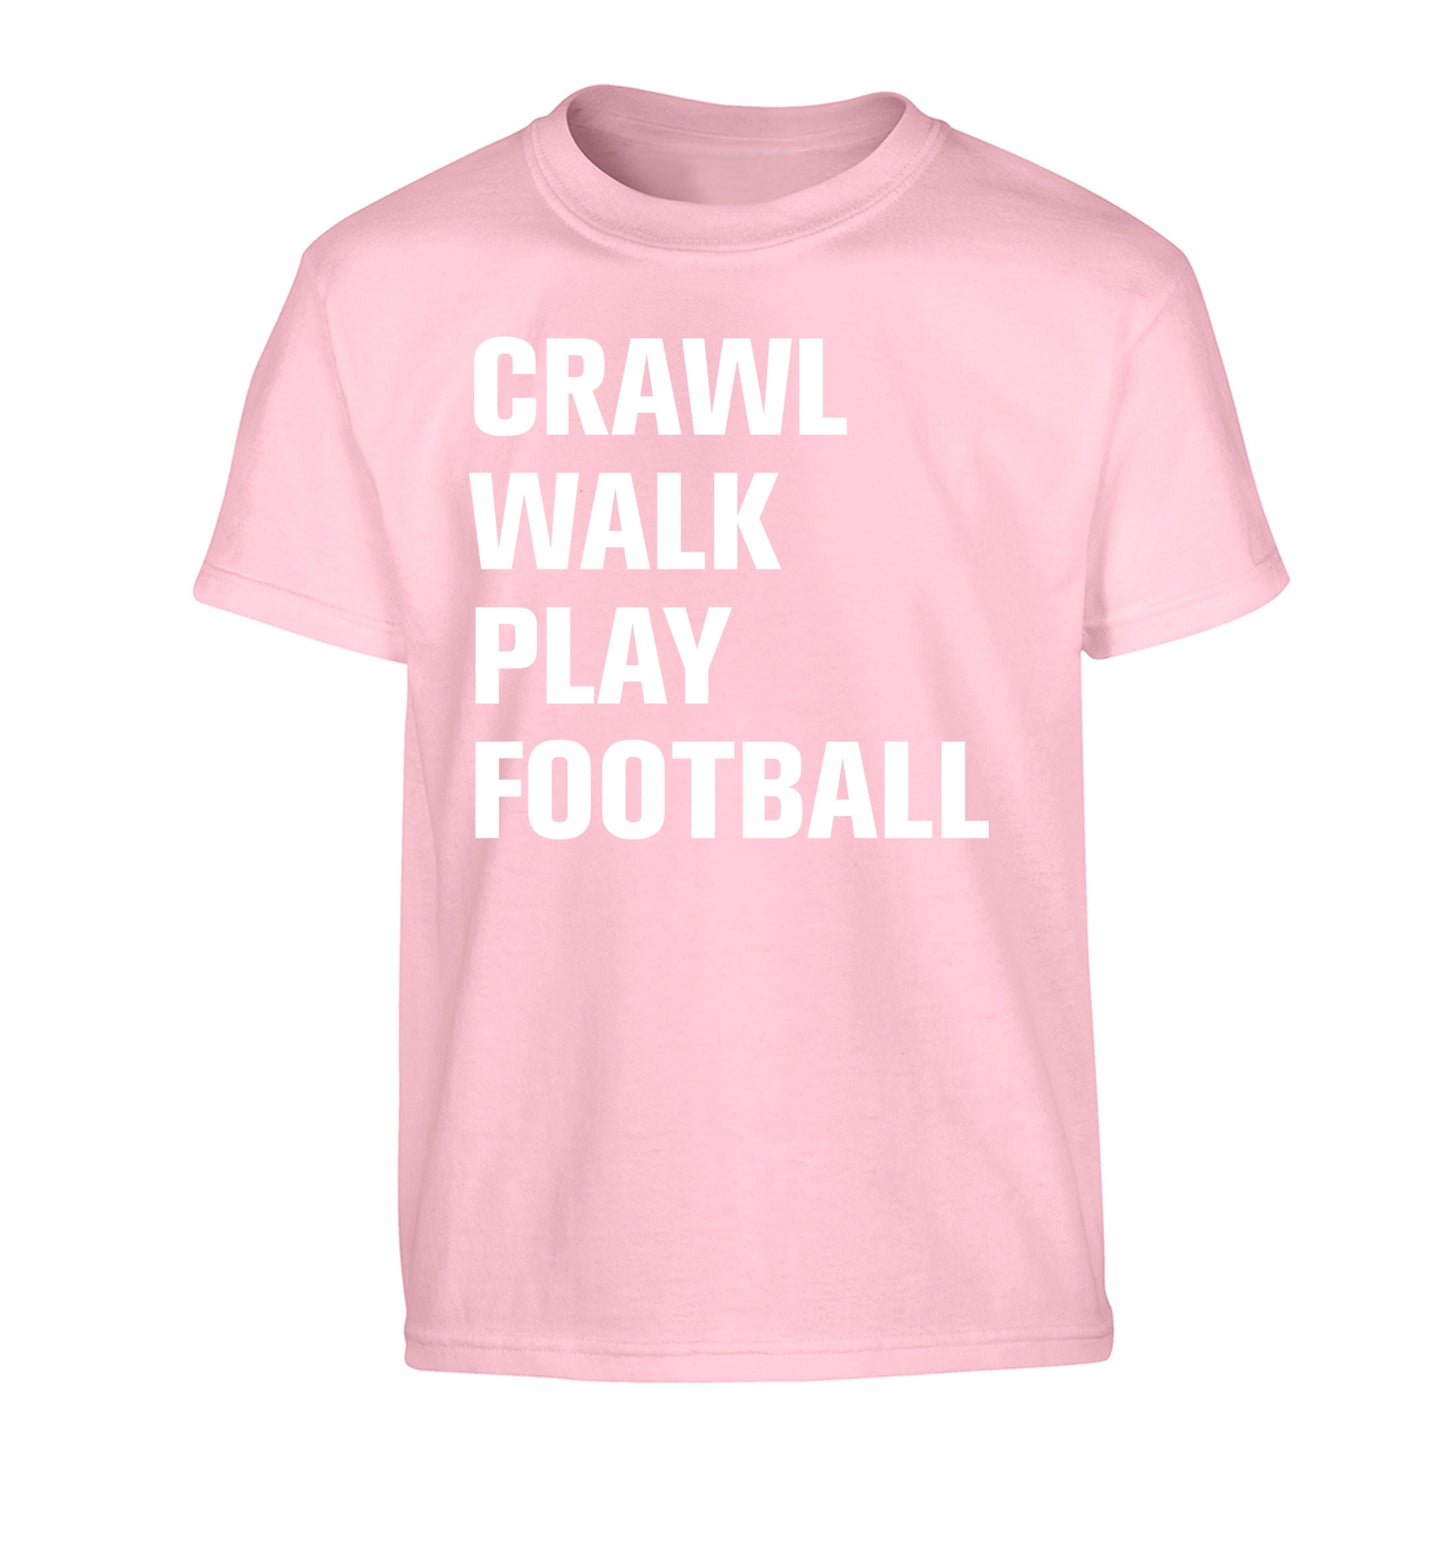 Crawl, walk, play football Children's light pink Tshirt 12-13 Years